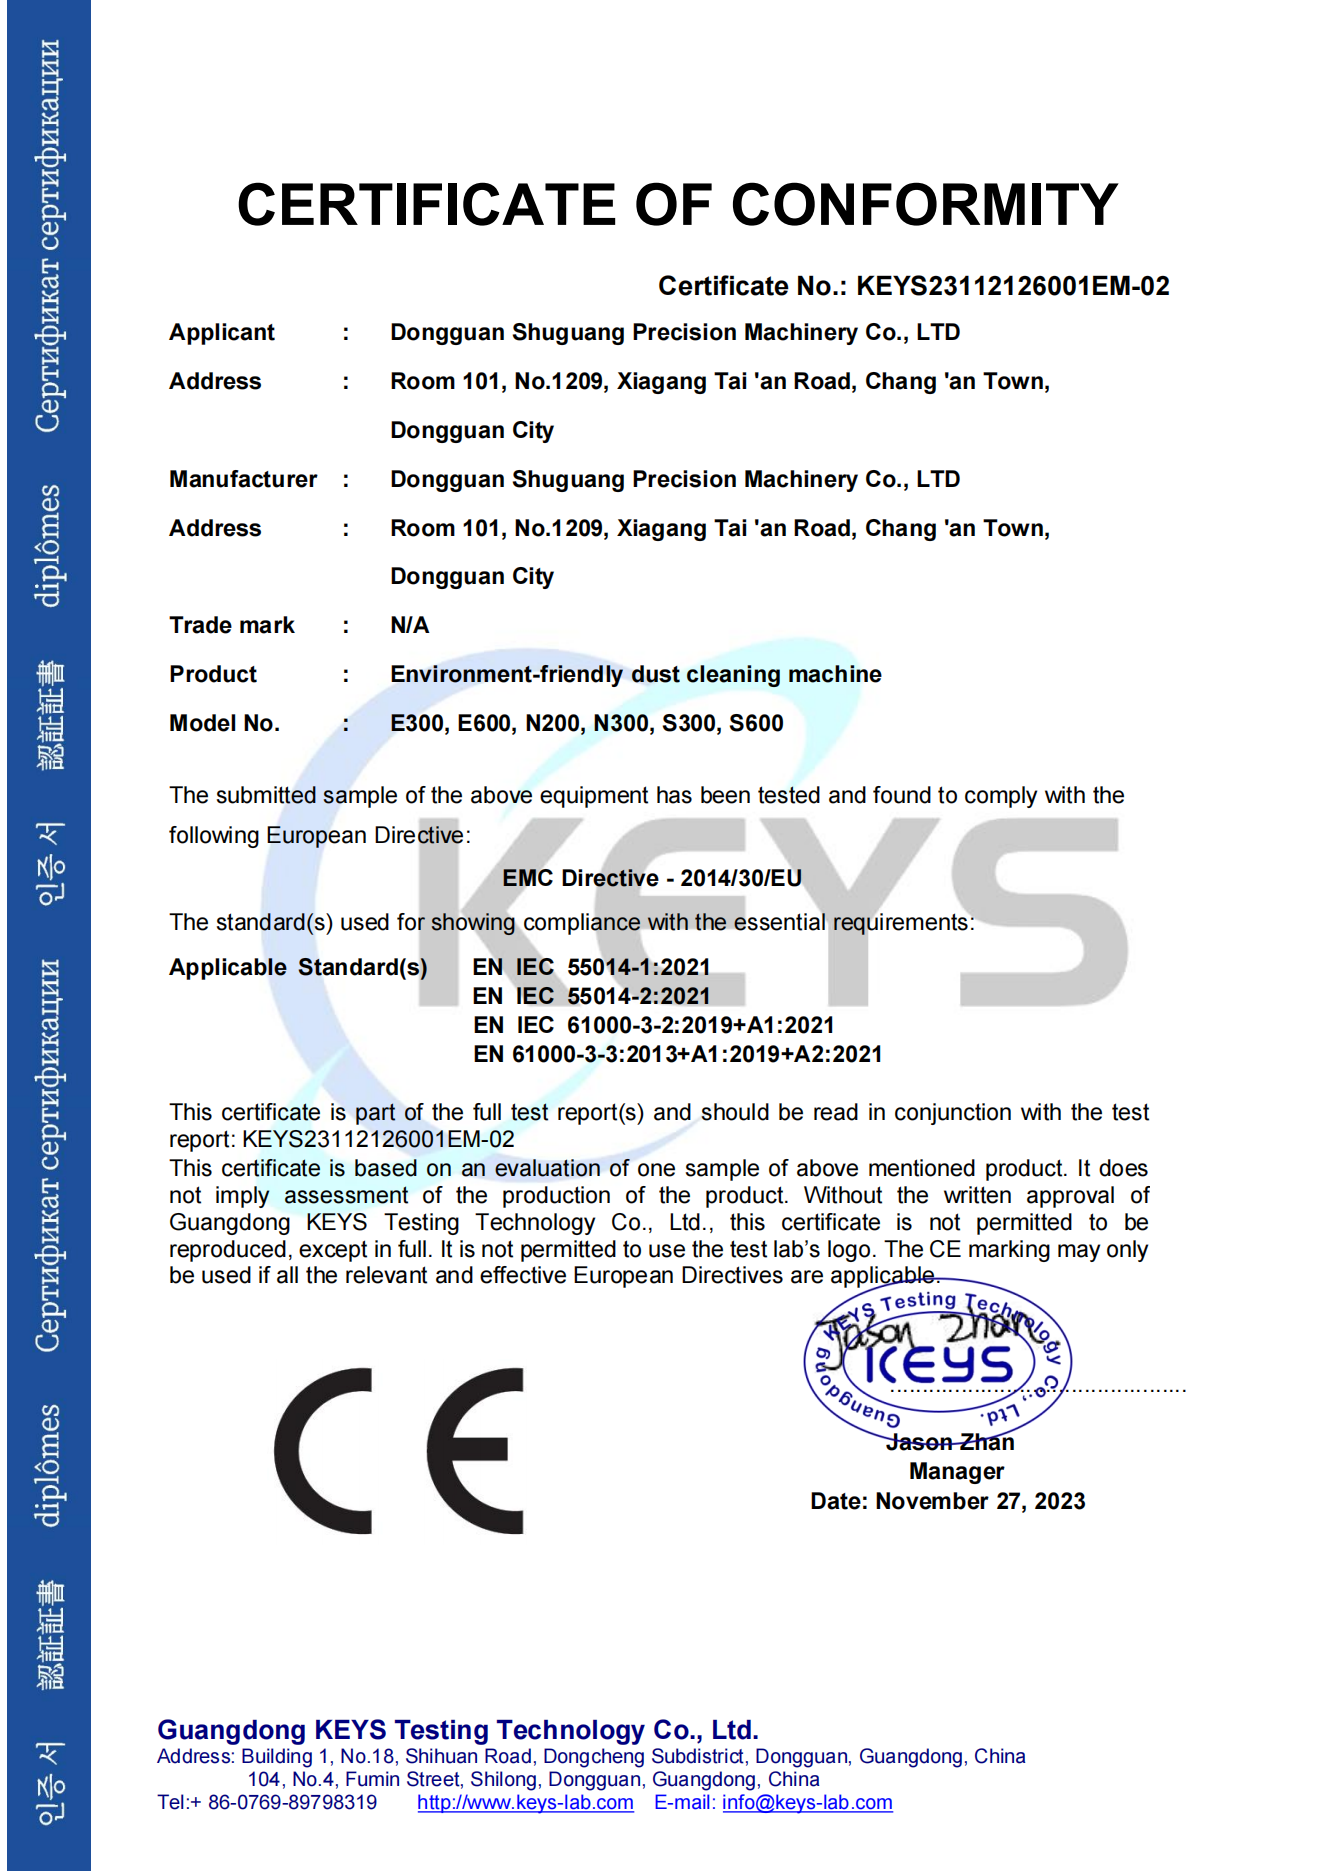 喜提环保型吸尘净化机CE-EMC认证